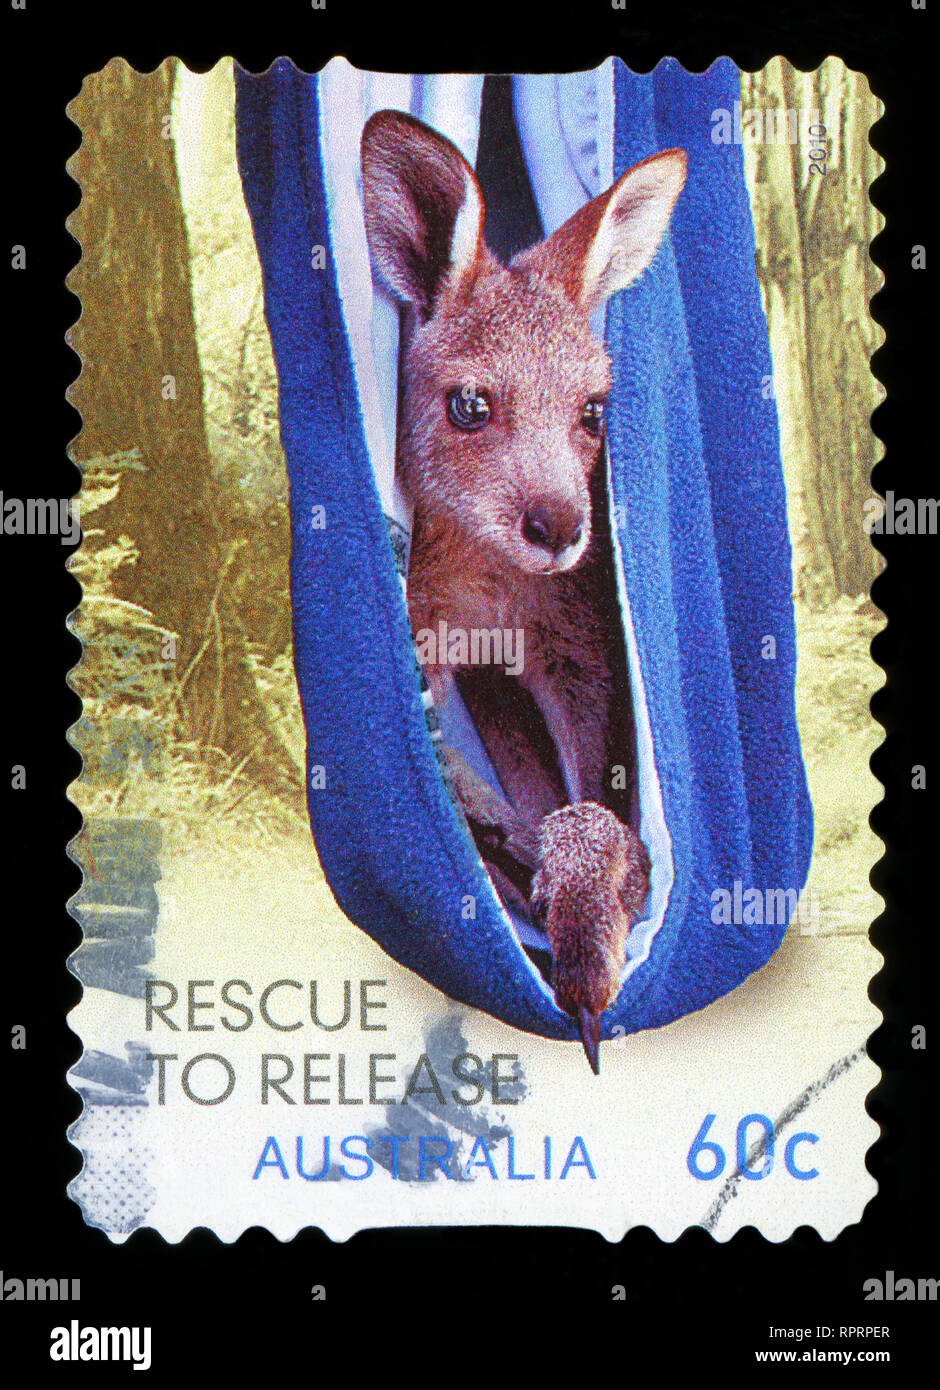 Kangaroo like animal hi-res stock photography and images - Alamy